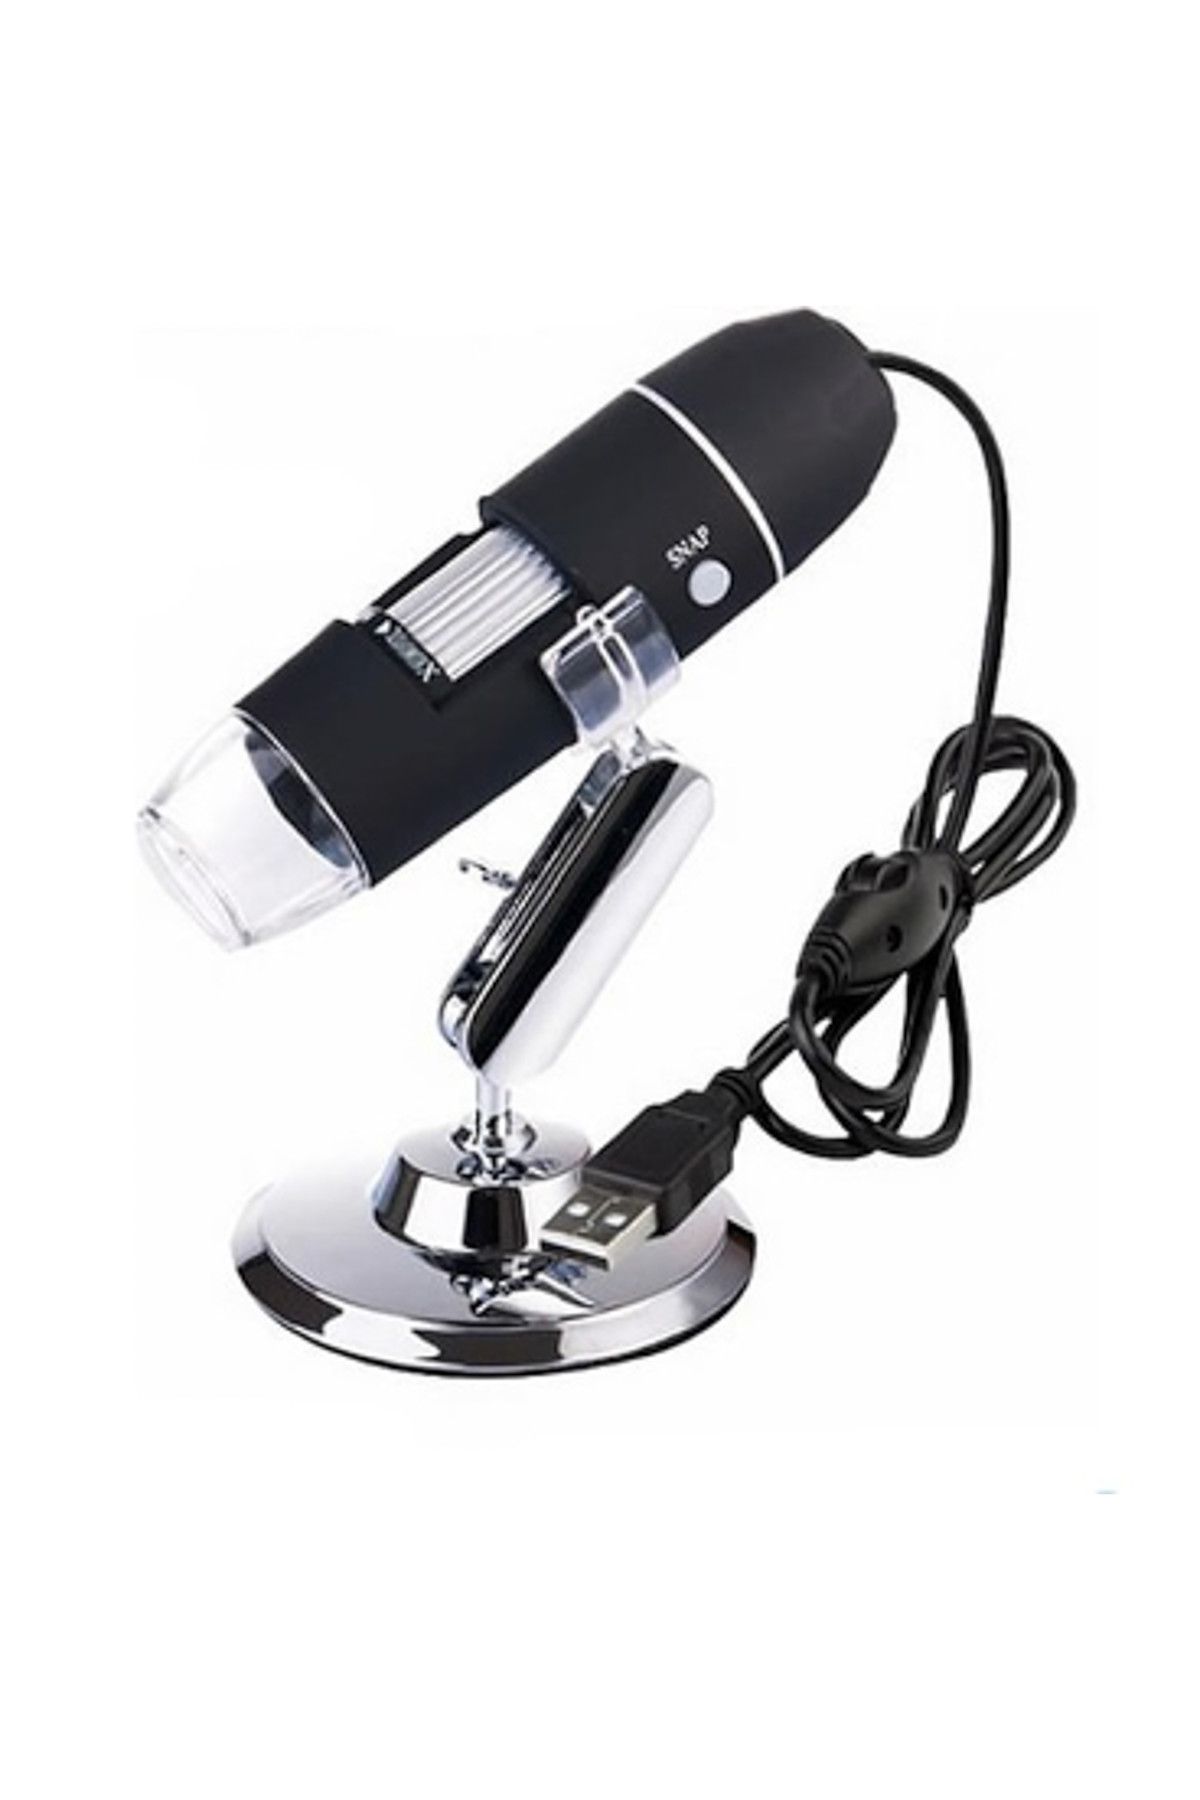 Bushman 1000x 2mp Dijital Taşınabilir Standlı 8 Ledli Usb Mikroskop